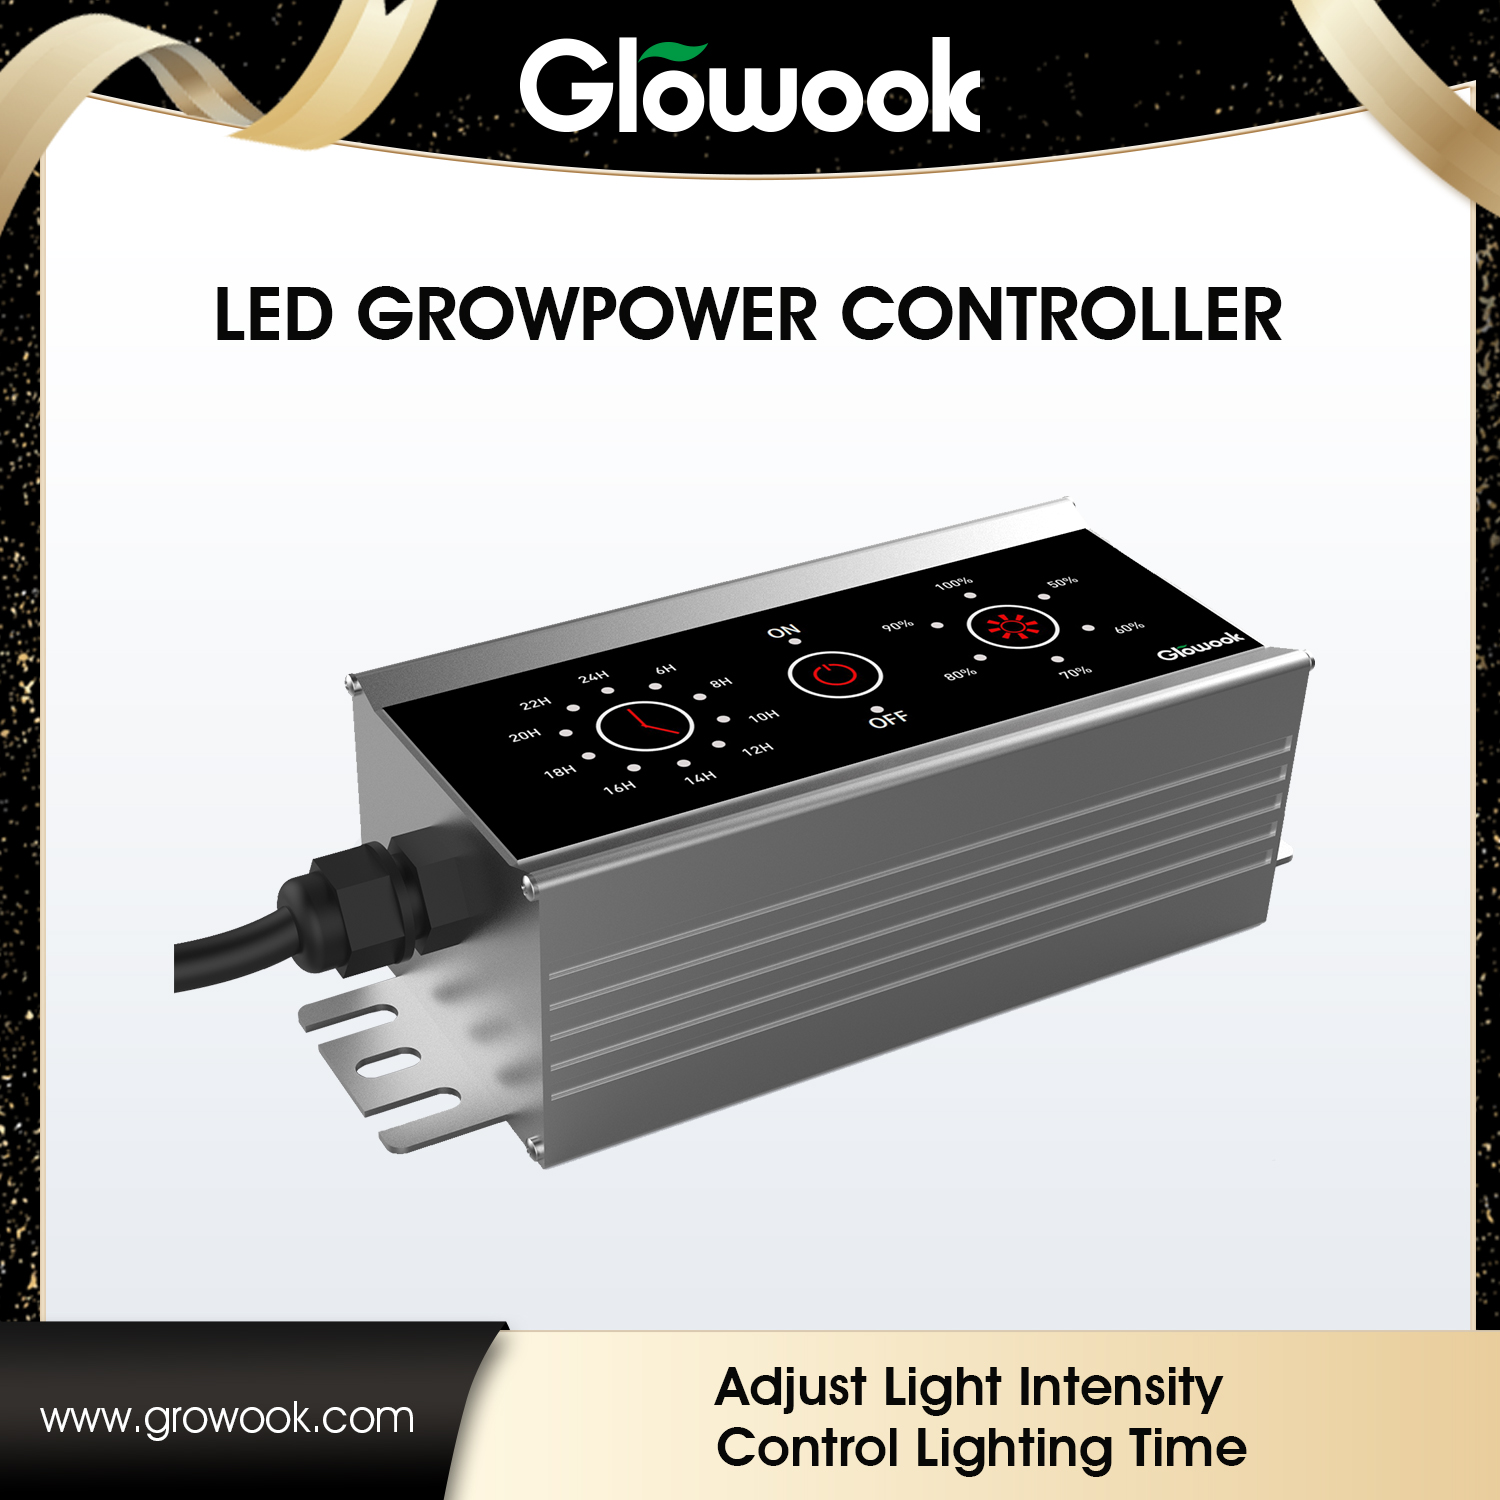 LED Growpower Controller